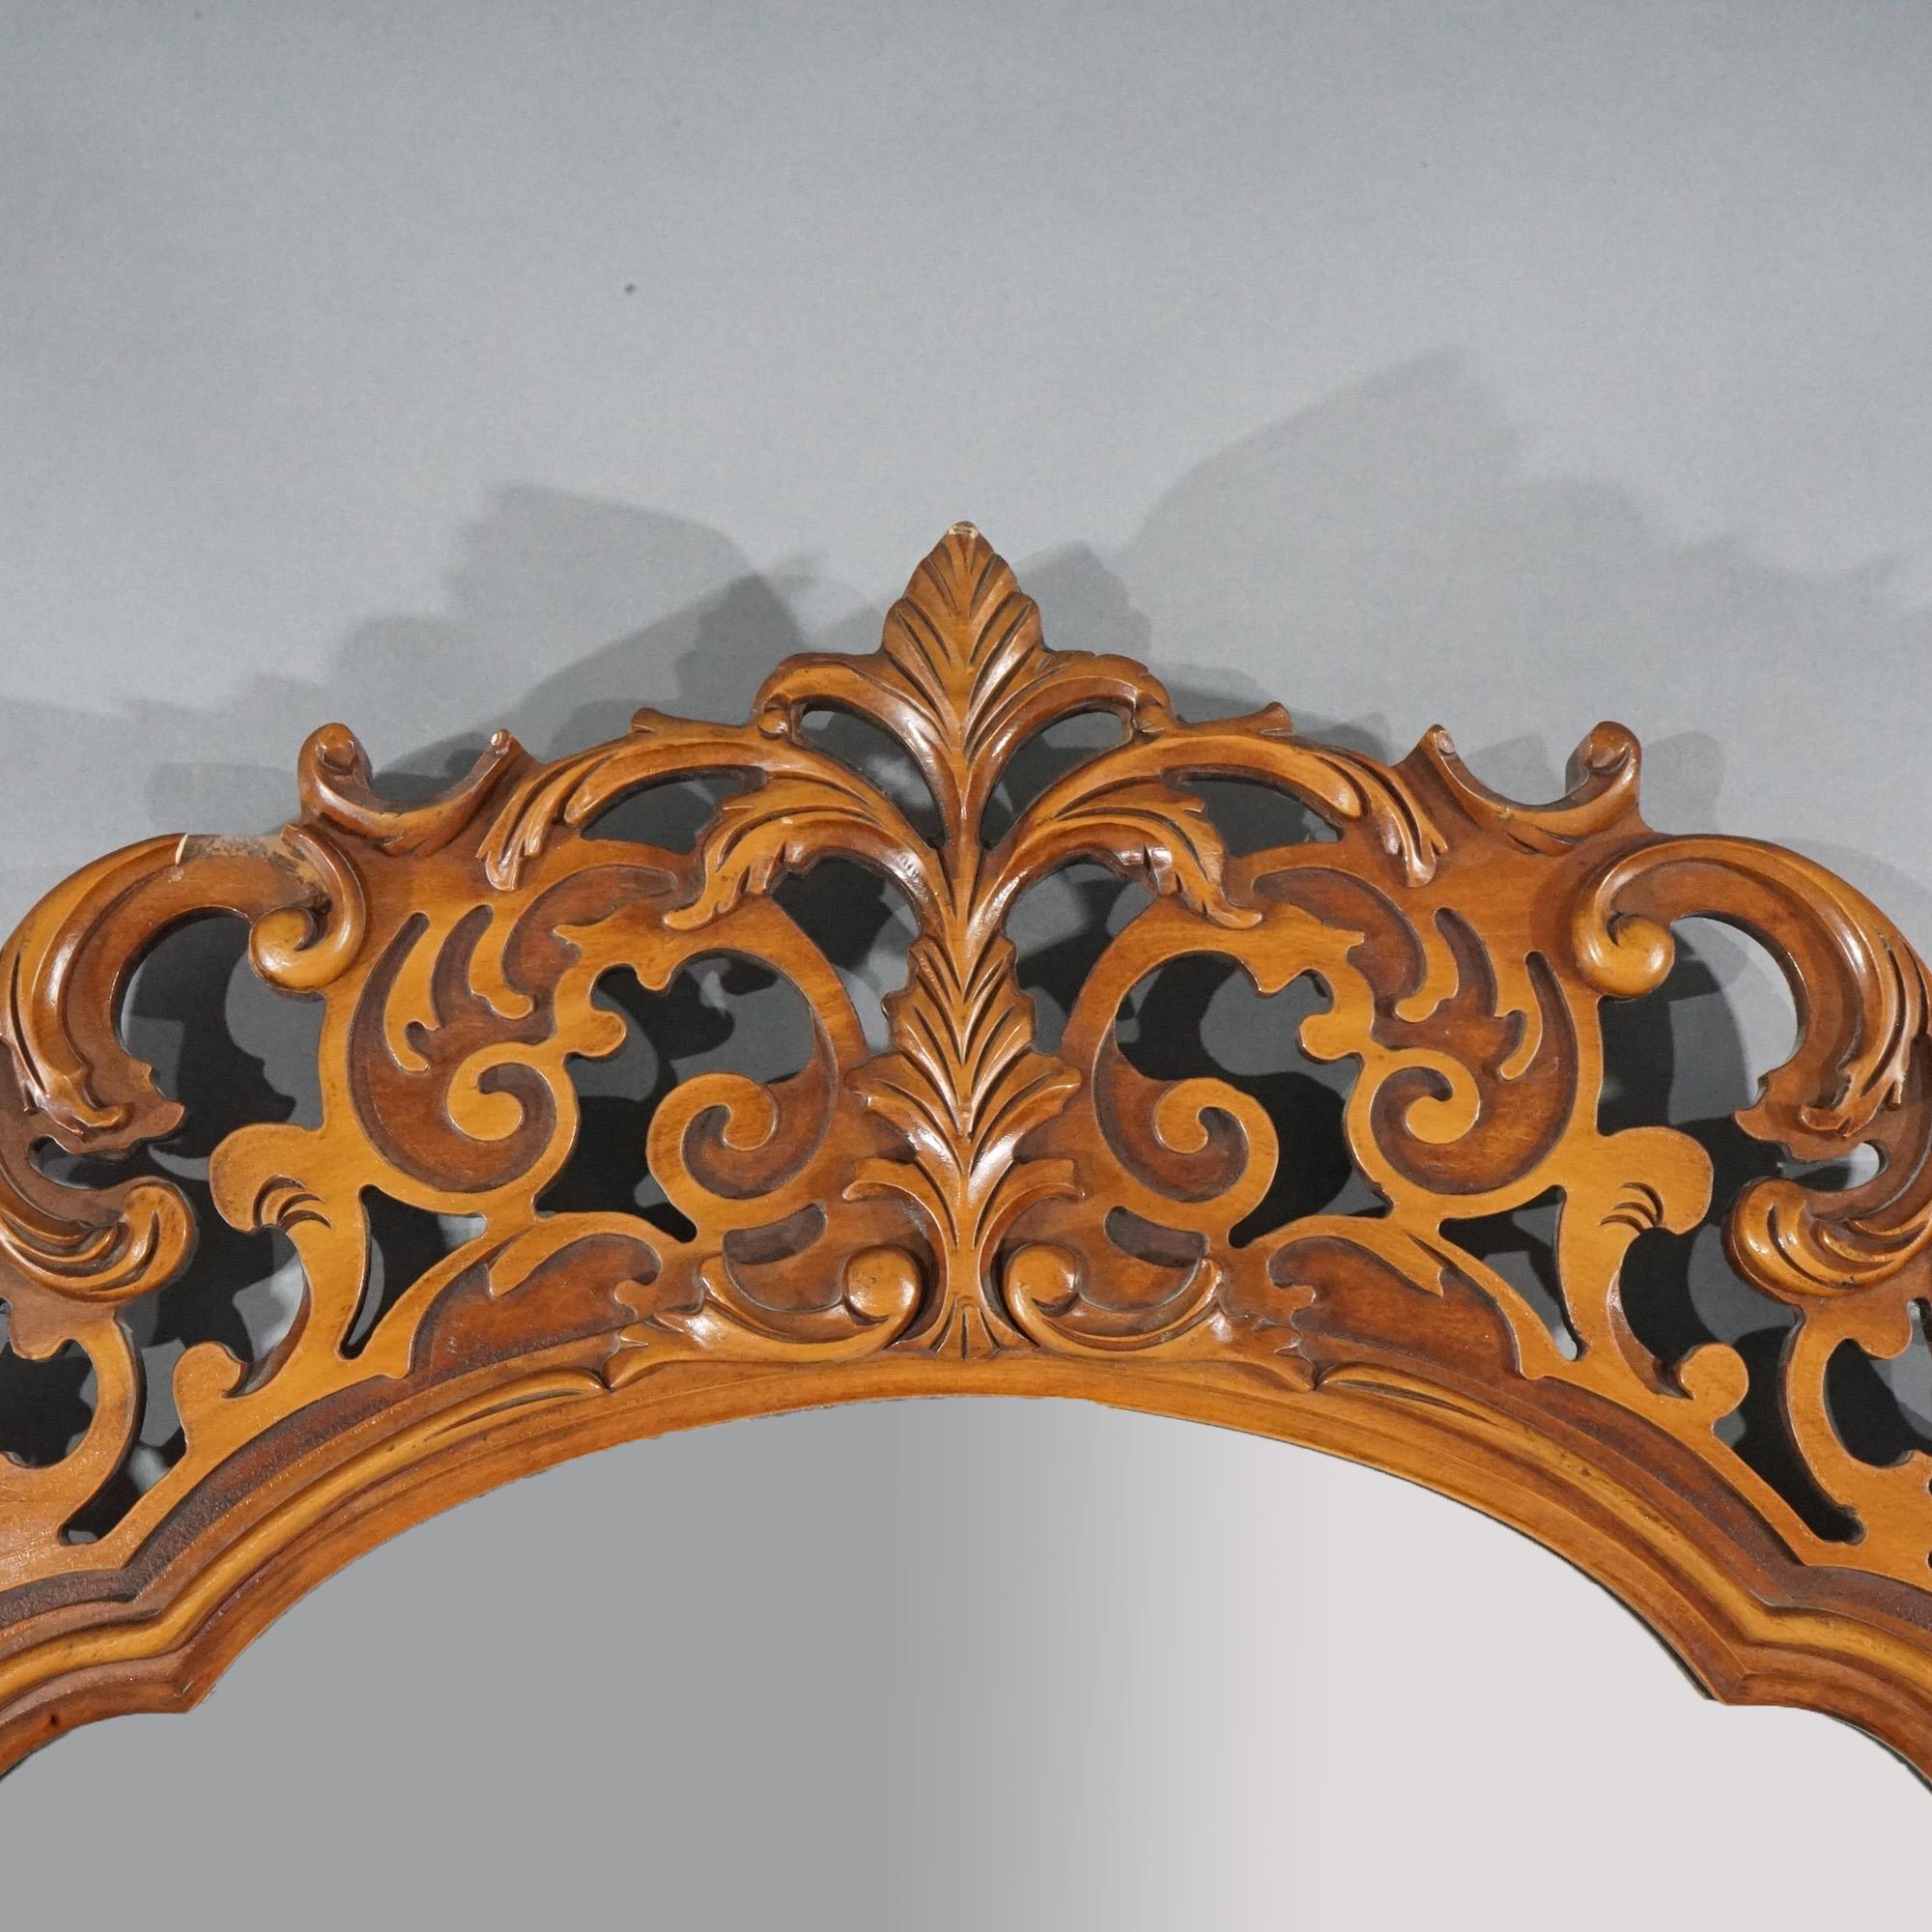 Paire de miroirs muraux anciens assortis de style Louis XIV, en acajou, avec des formes et des crêtes sculptées de rinceaux et de feuillages, vers 1930. 

Note sur le catalogue : Demandez les TARIFS DE LIVRAISON RÉDUITS disponibles pour la plupart